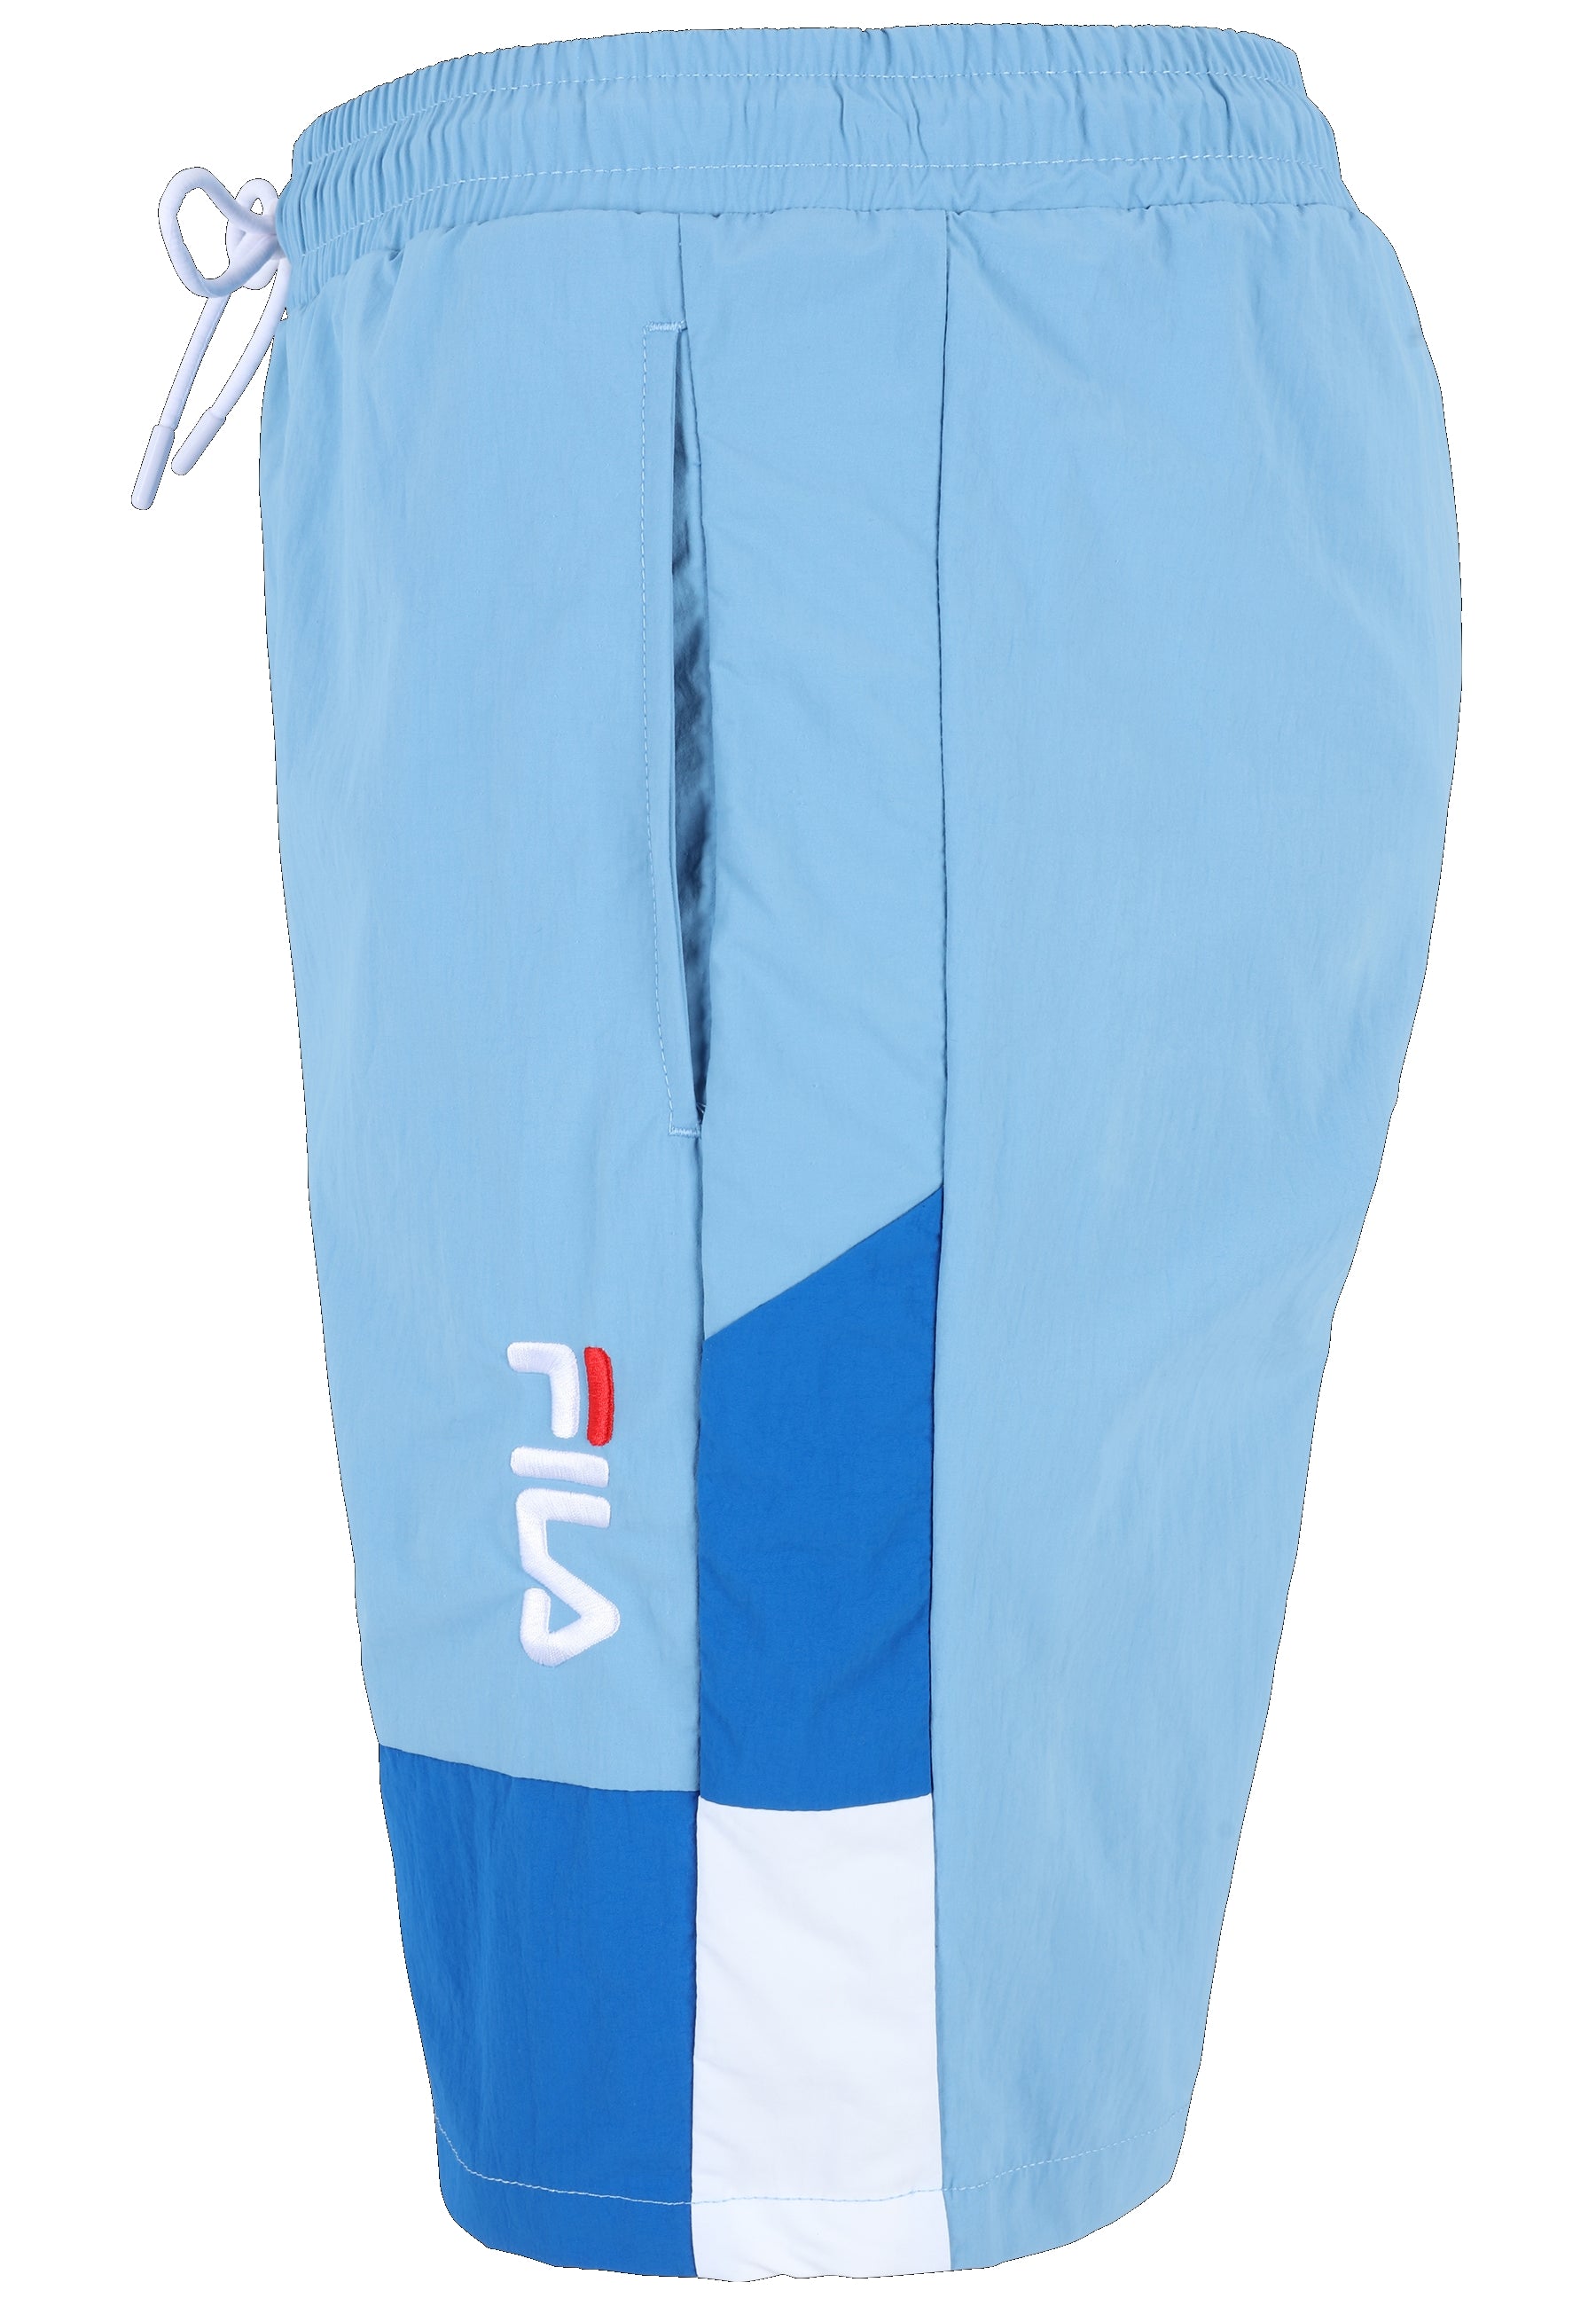 Sciacca Swim Shorts in Lichen Blue-Vallarta Blue-Bright White Badehosen Fila   